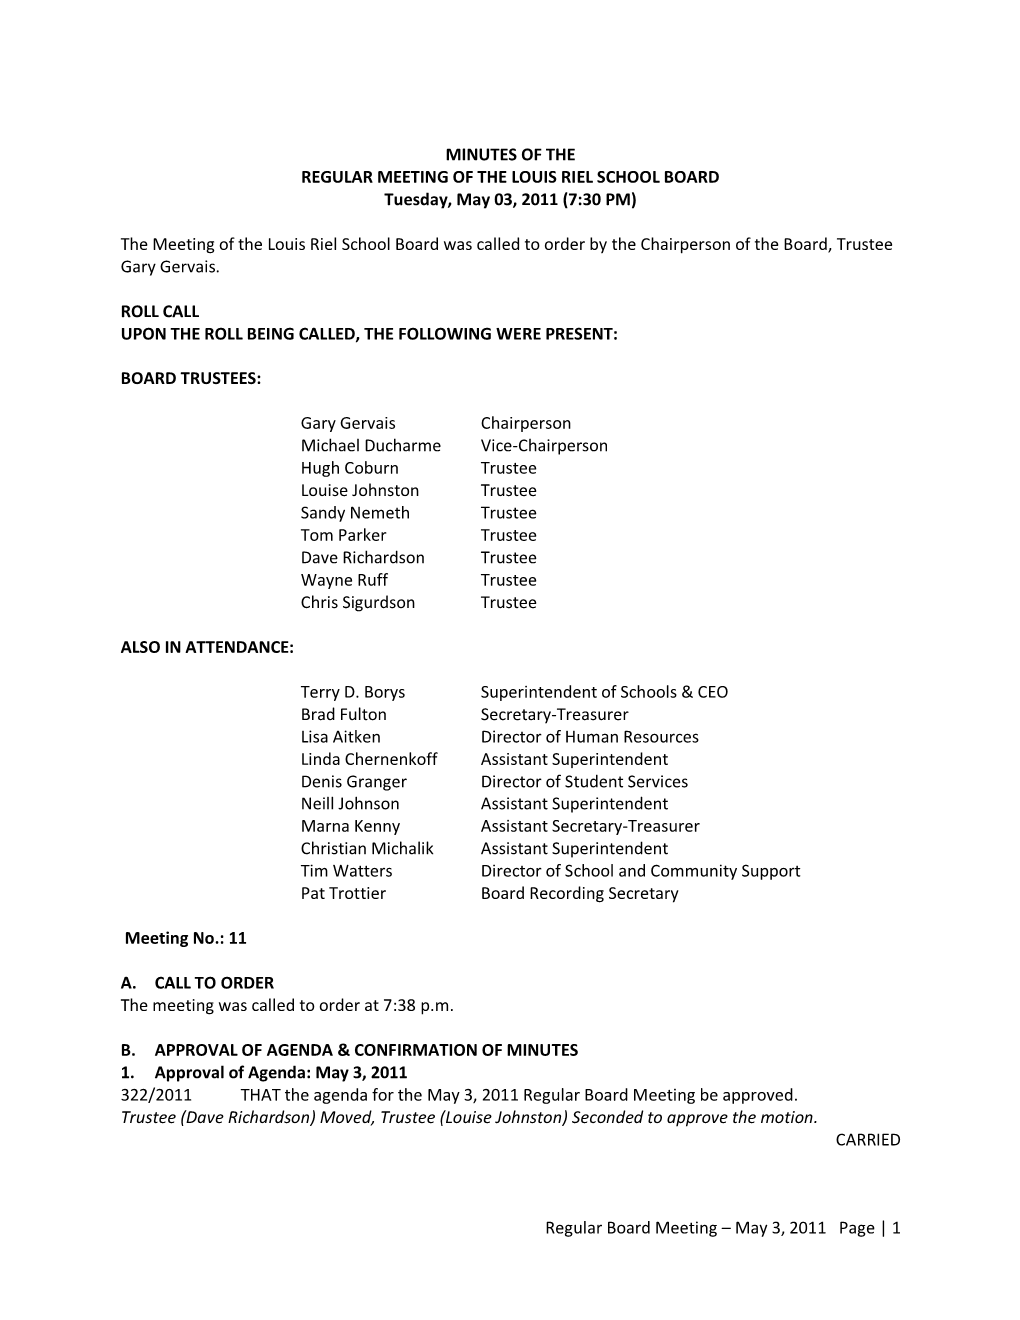 Regular Board Meeting – May 3, 2011 Page | 1